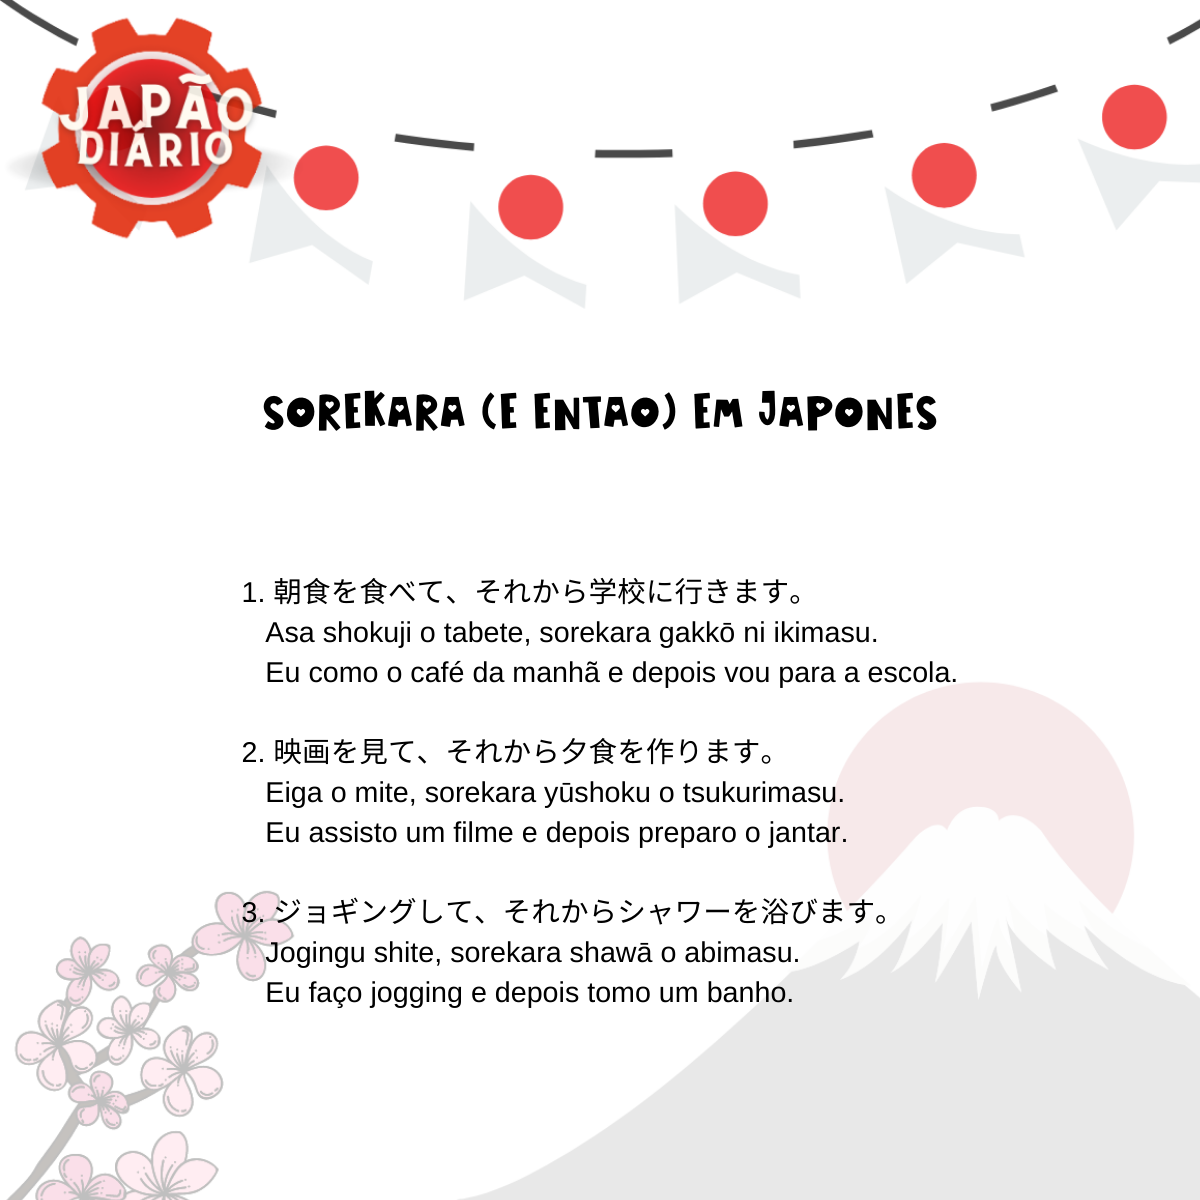 Sorekara em Japonês (e Então).